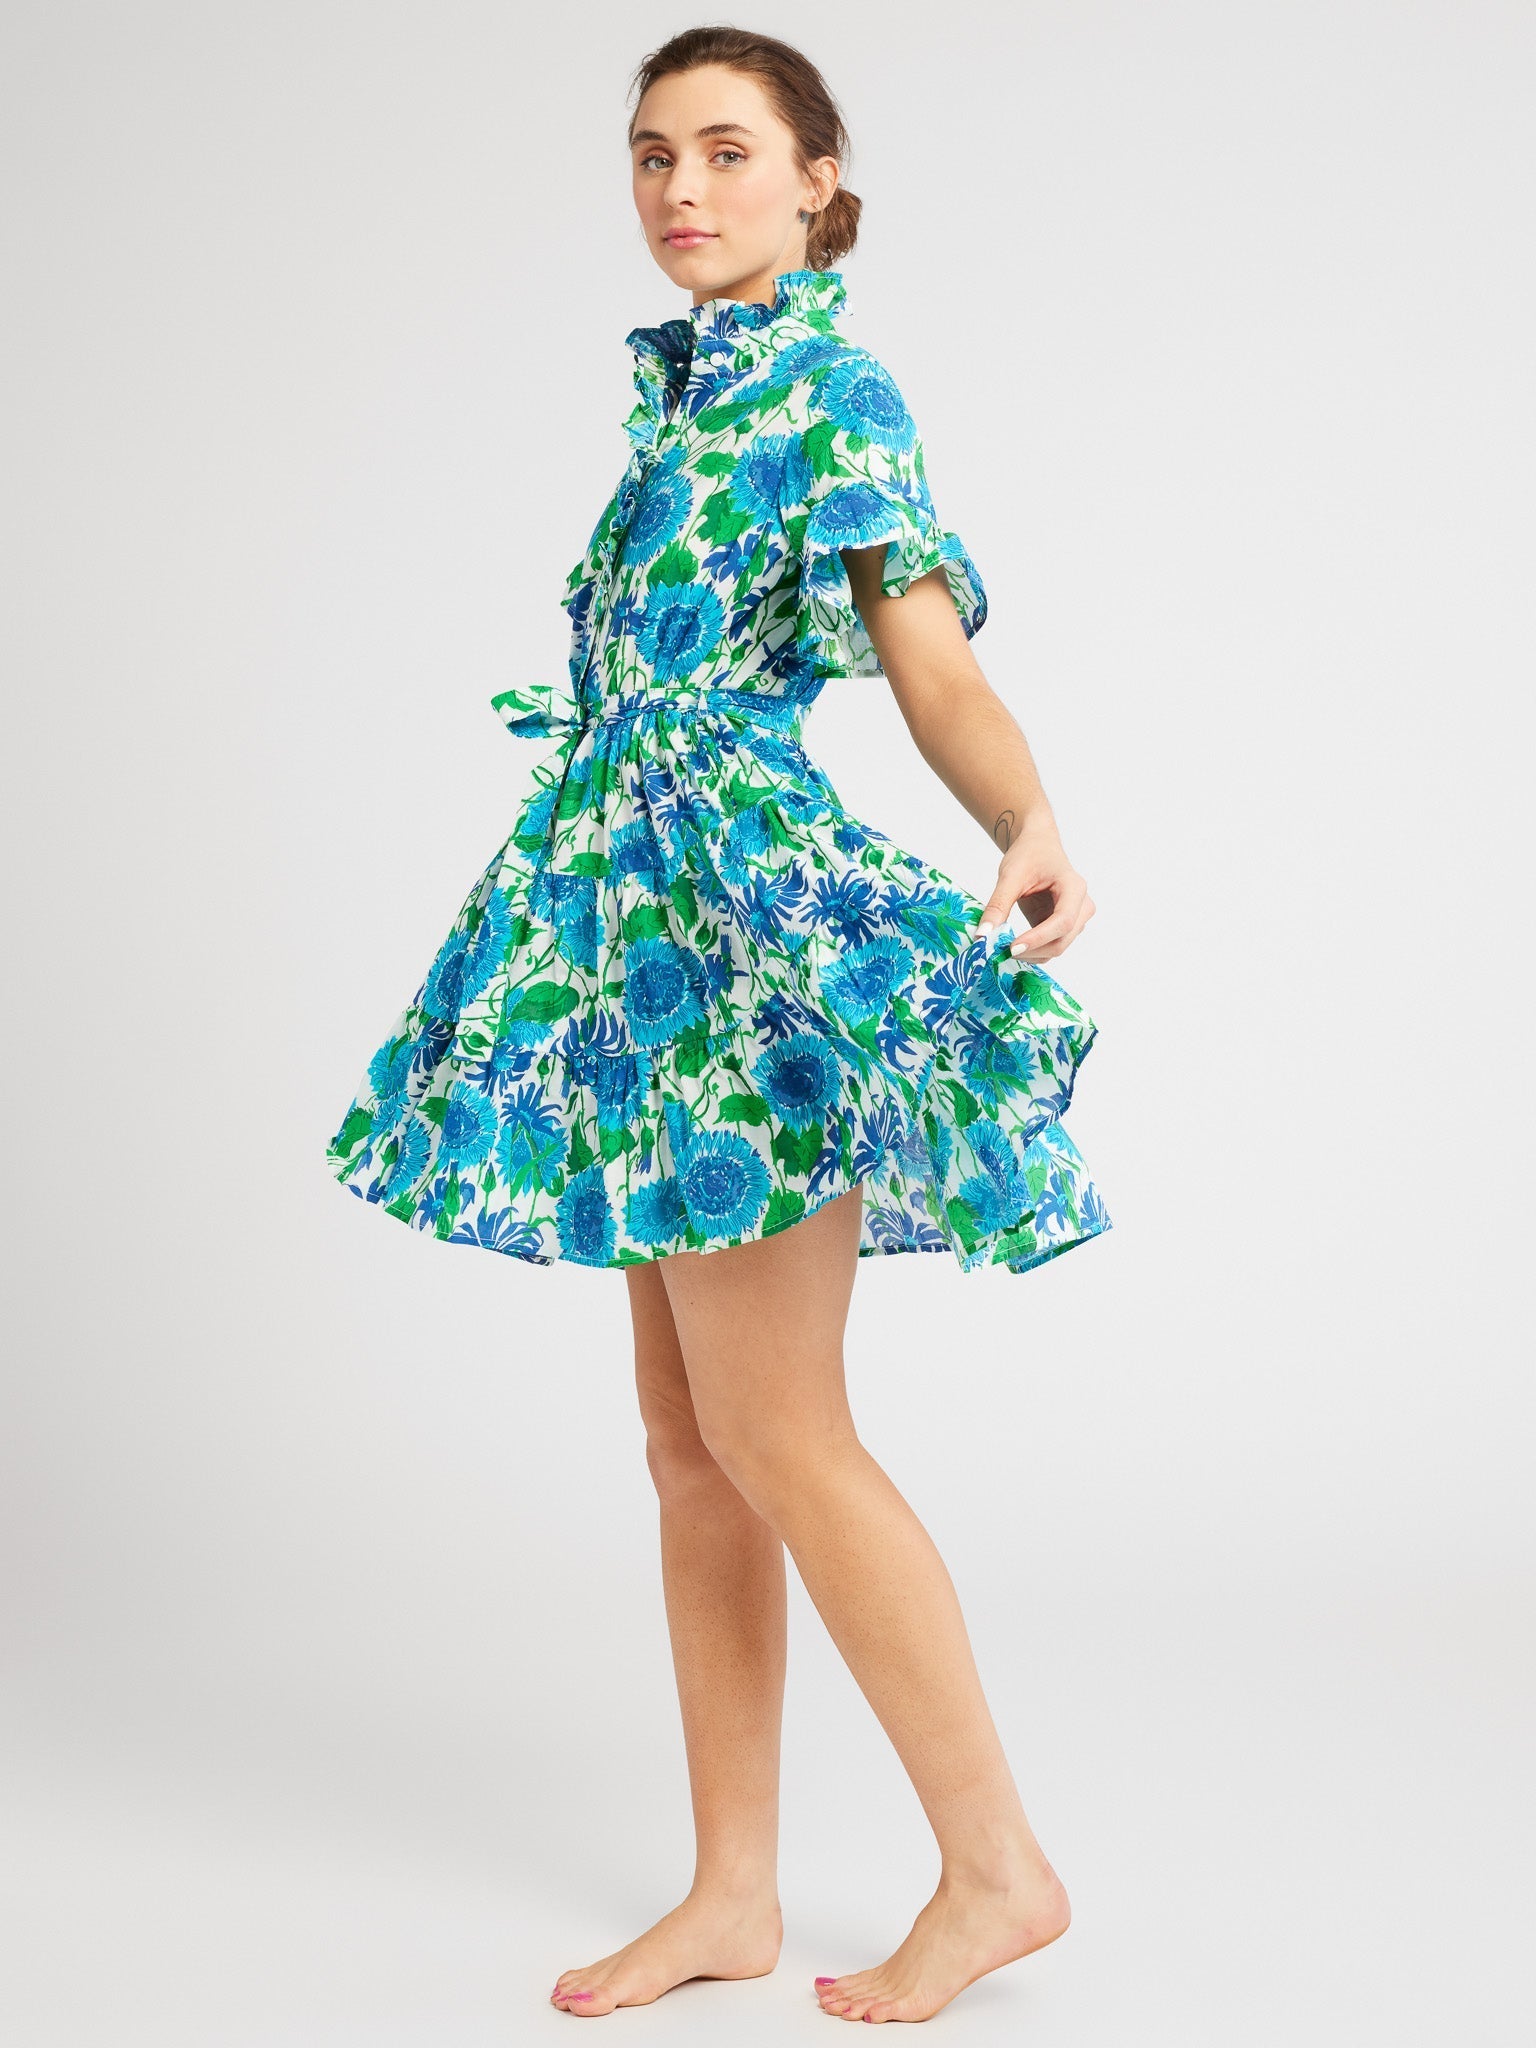 MILLE Clothing Violetta Dress in Cornflower